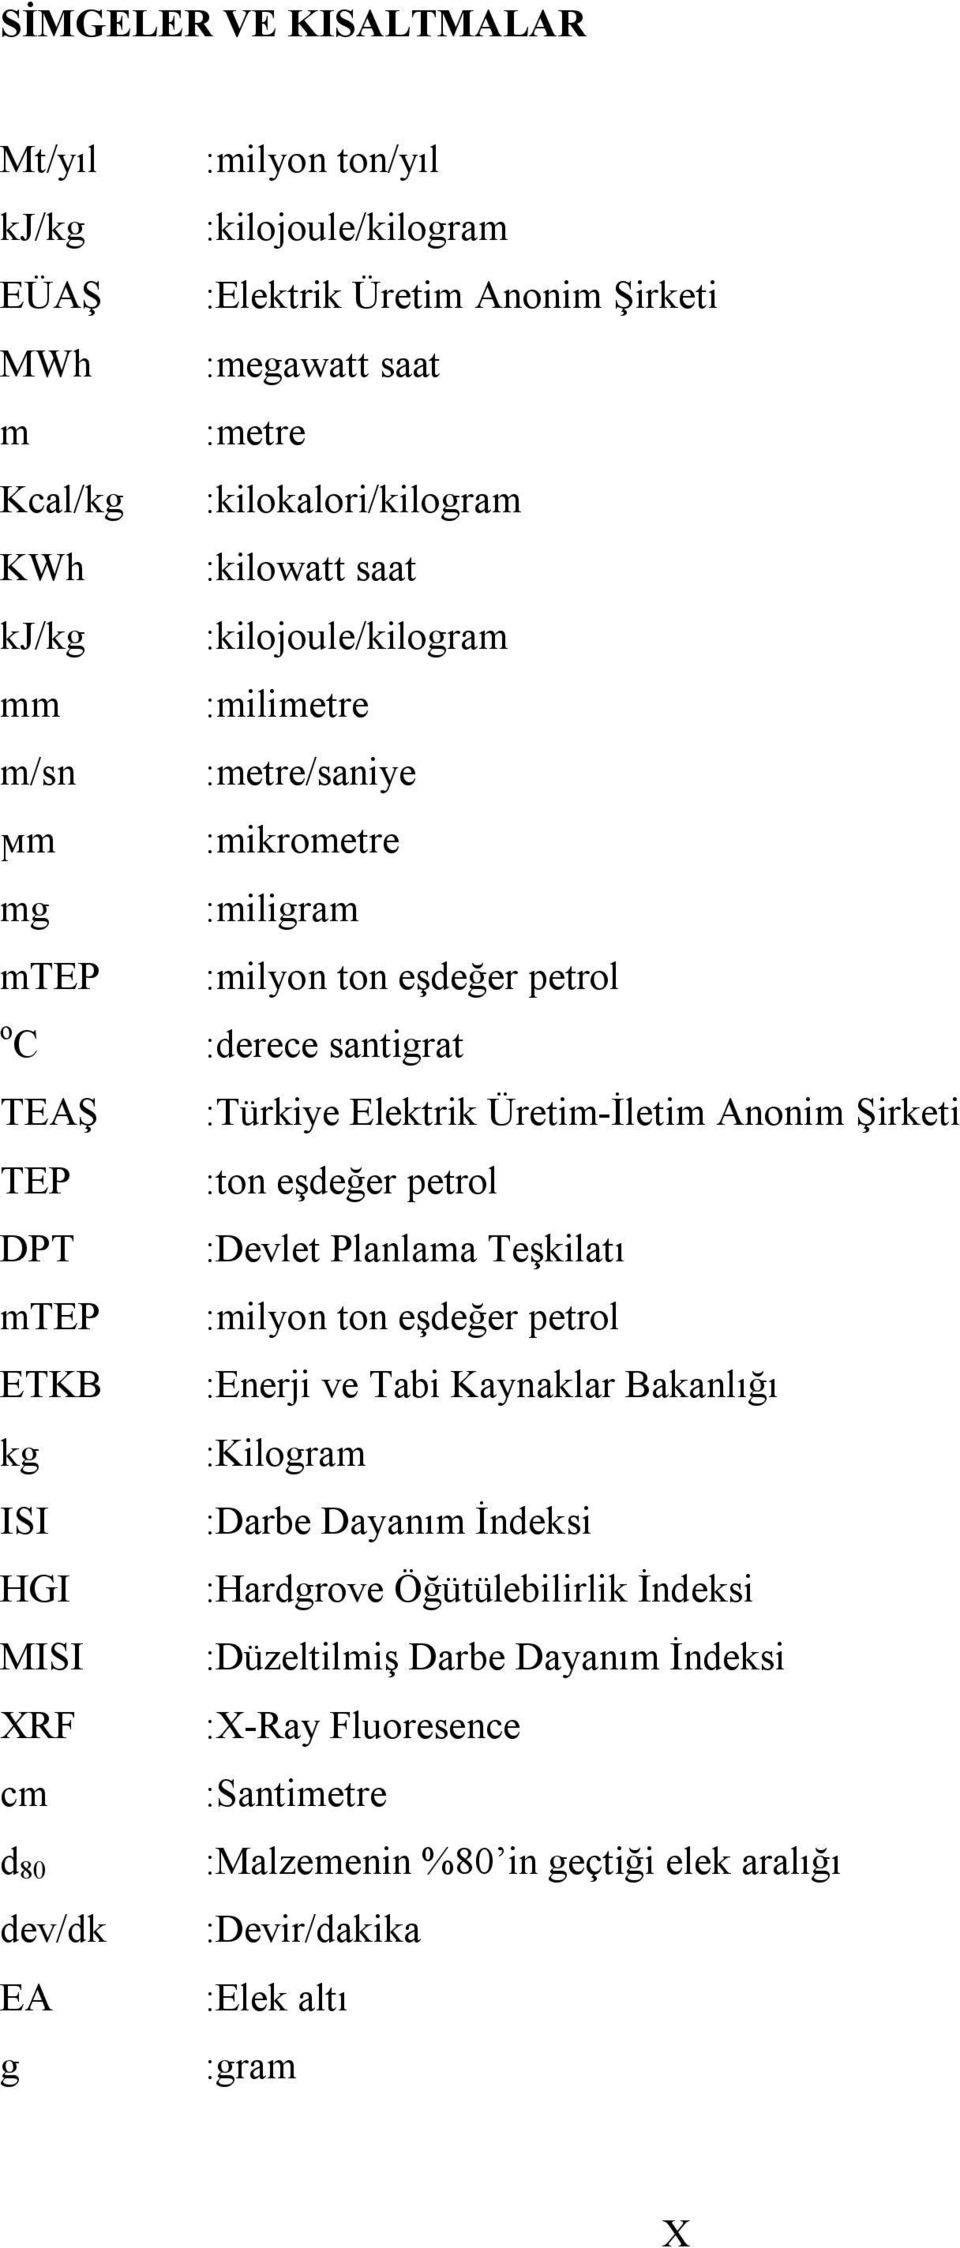 :derece santigrat :Türkiye Elektrik Üretim-İletim Anonim Şirketi :ton eşdeğer petrol :Devlet Planlama Teşkilatı :milyon ton eşdeğer petrol :Enerji ve Tabi Kaynaklar Bakanlığı :Kilogram